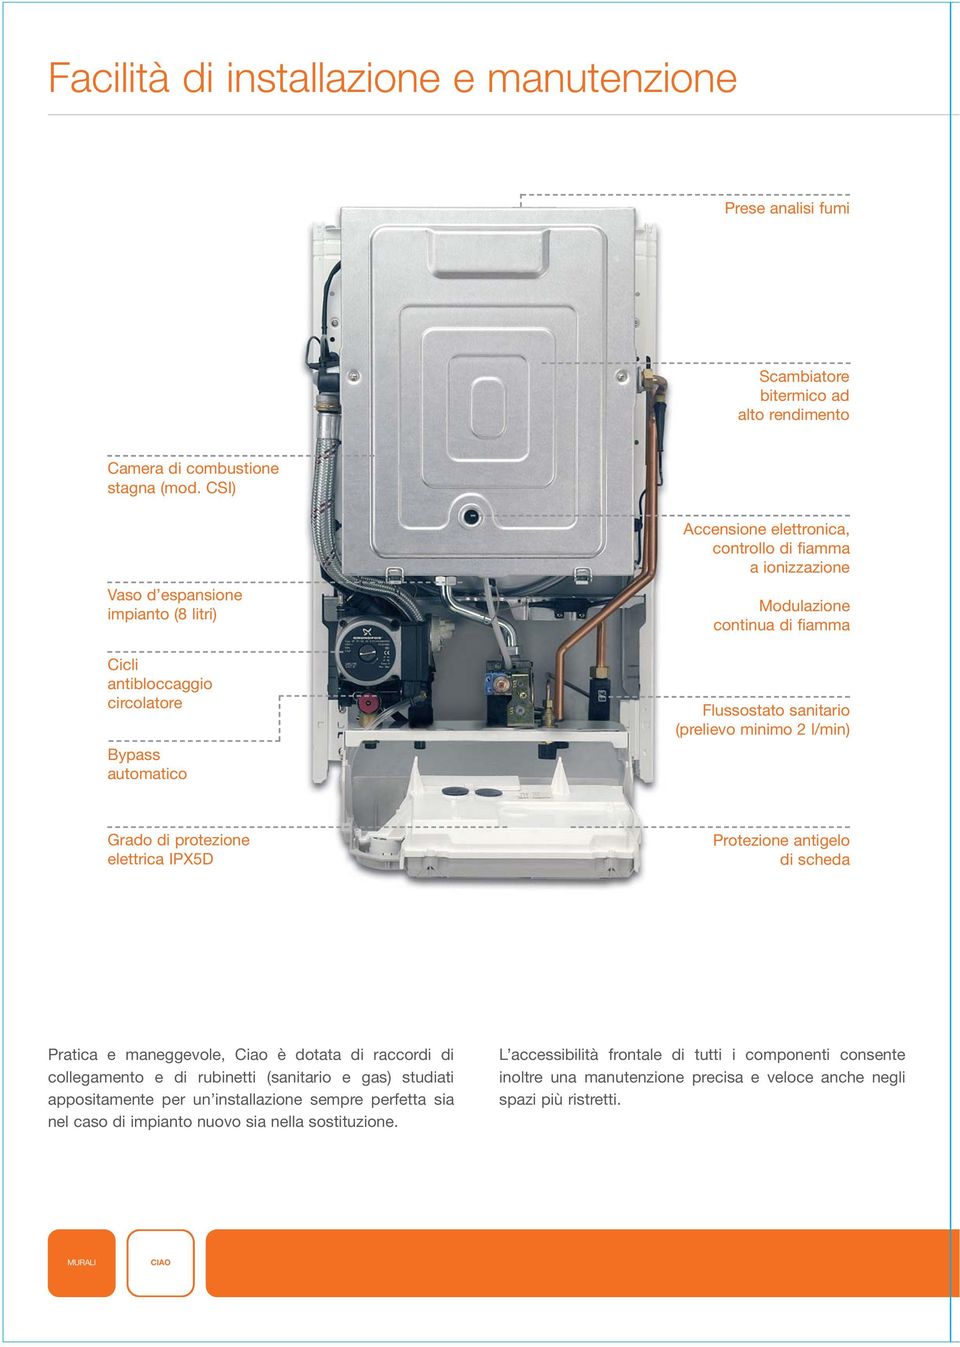 sanitario (prelievo minimo 2 l/min) Grado di protezione elettrica IPX5D Protezione antigelo di scheda Pratica e maneggevole, Ciao è dotata di raccordi di collegamento e di rubinetti (sanitario e